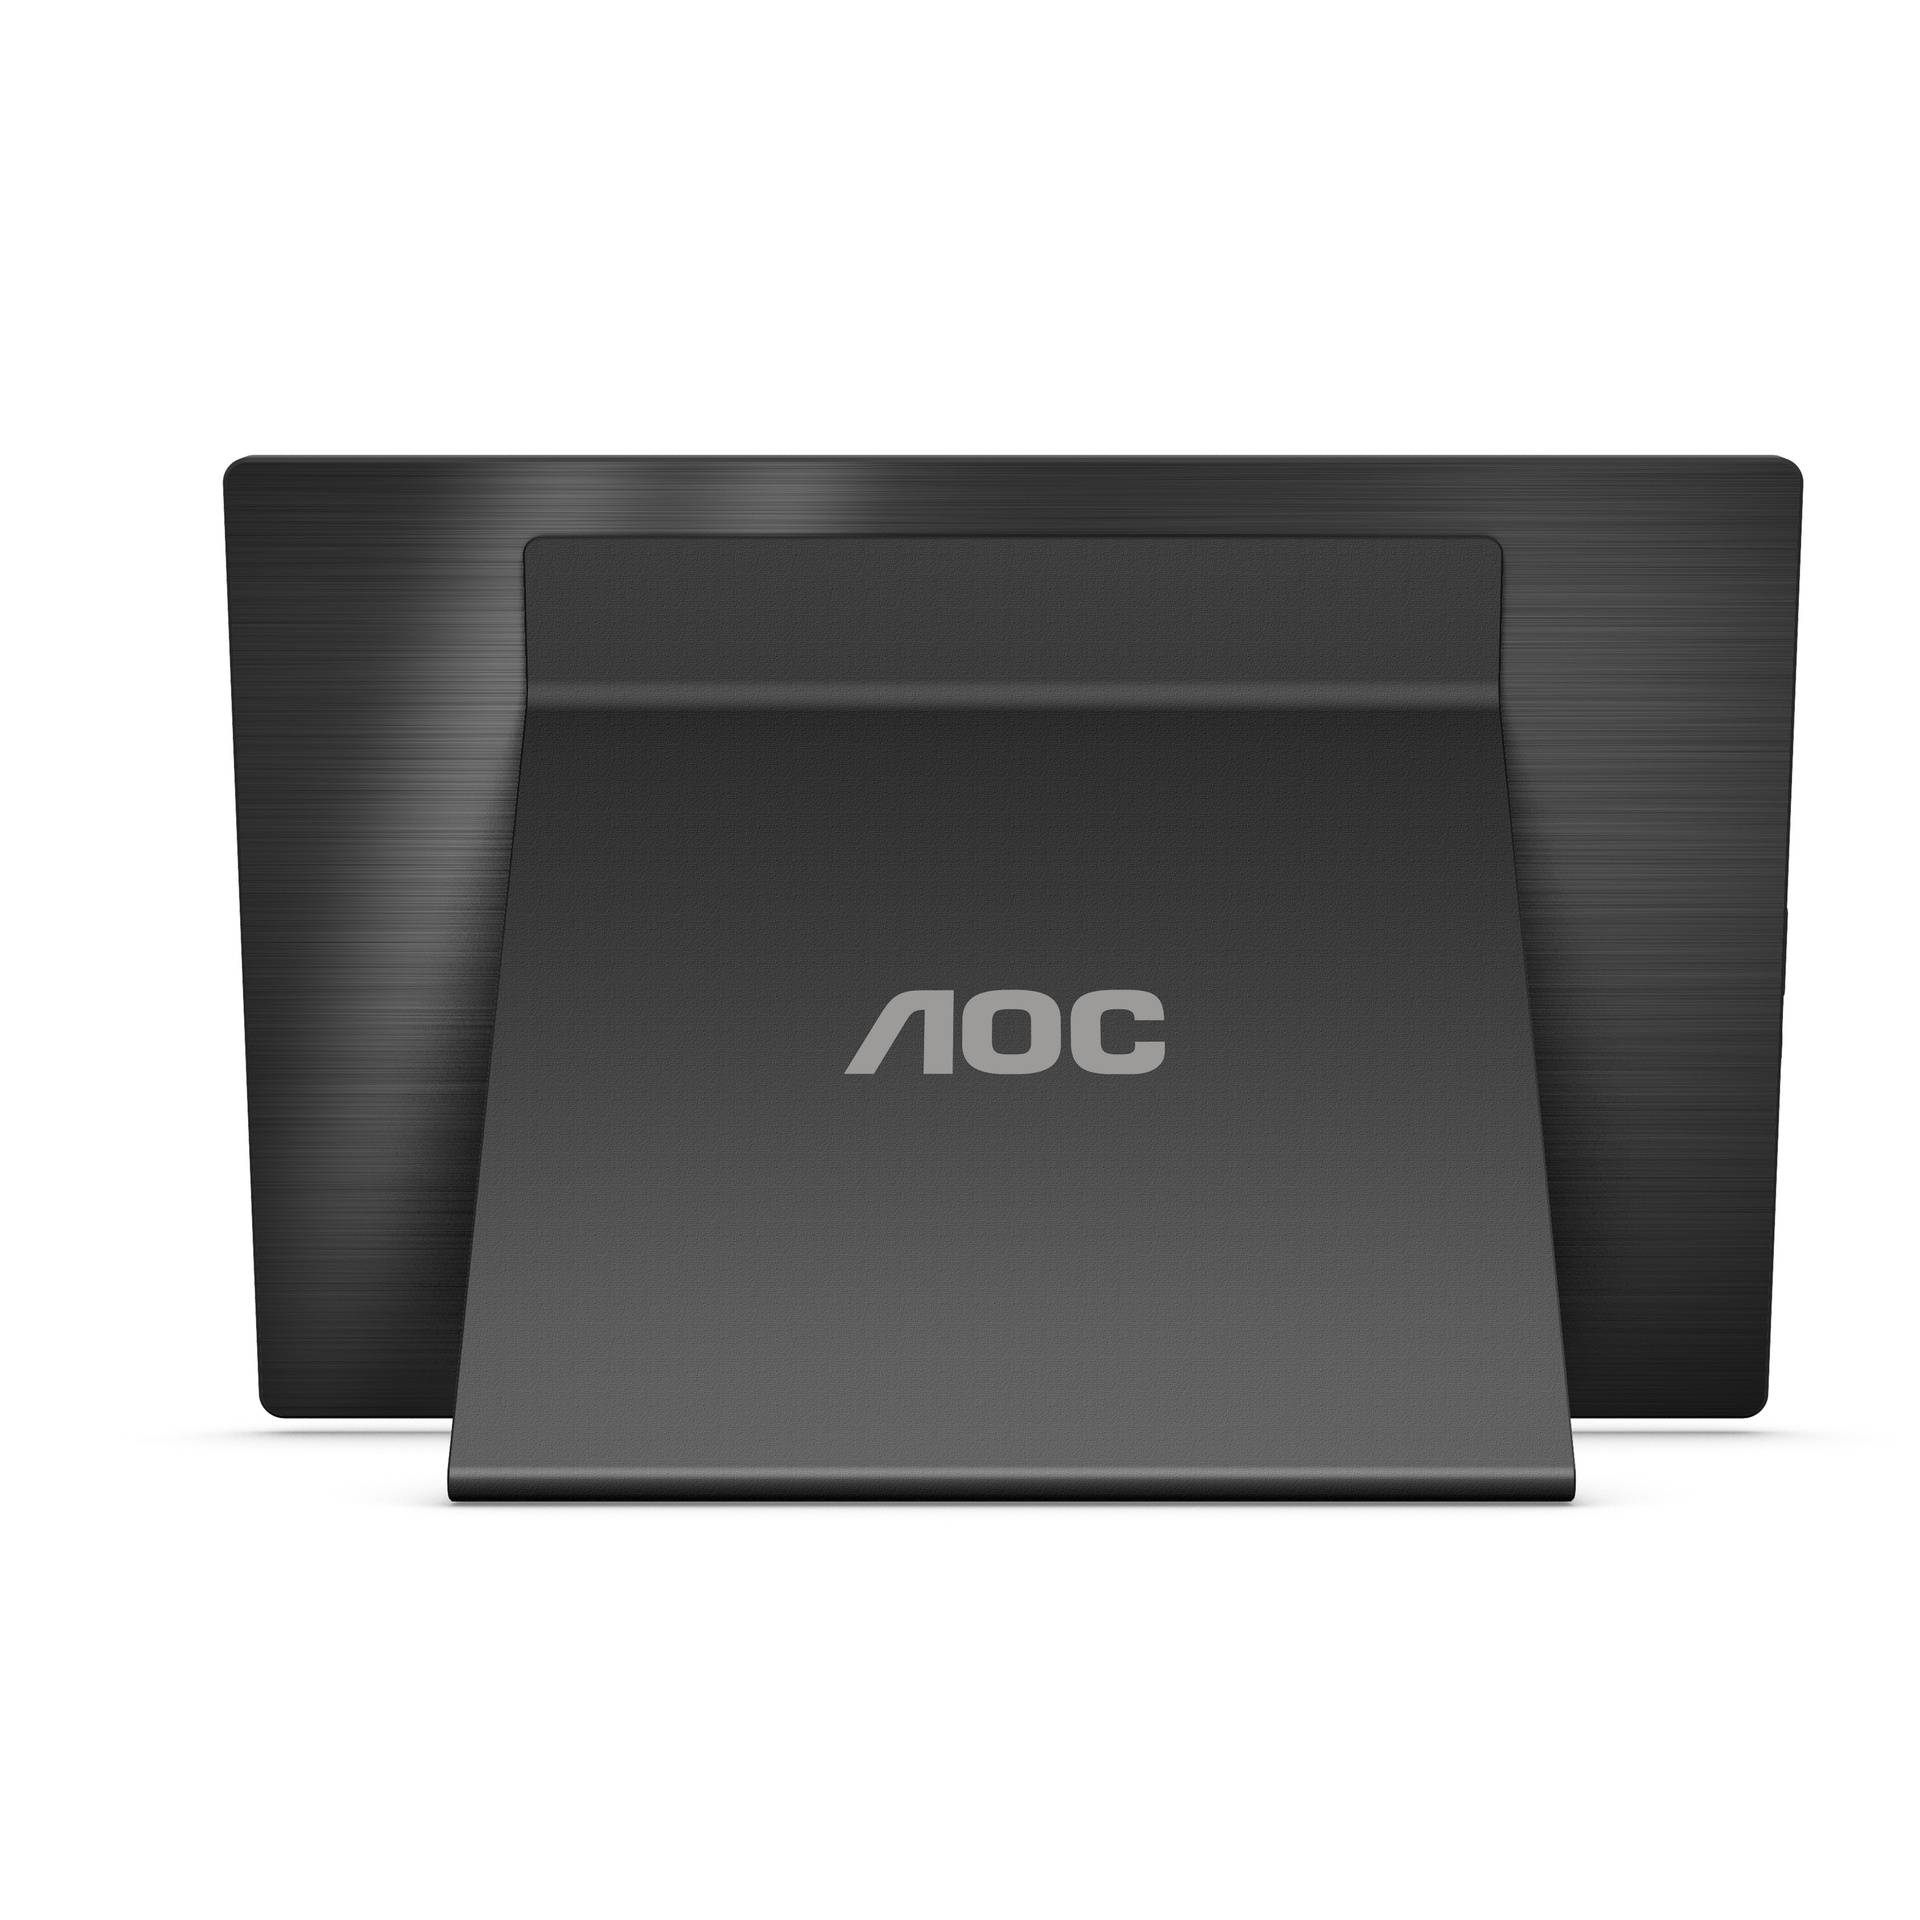 AOC najavio prijenosni monitor koji može puniti vaše gadgete